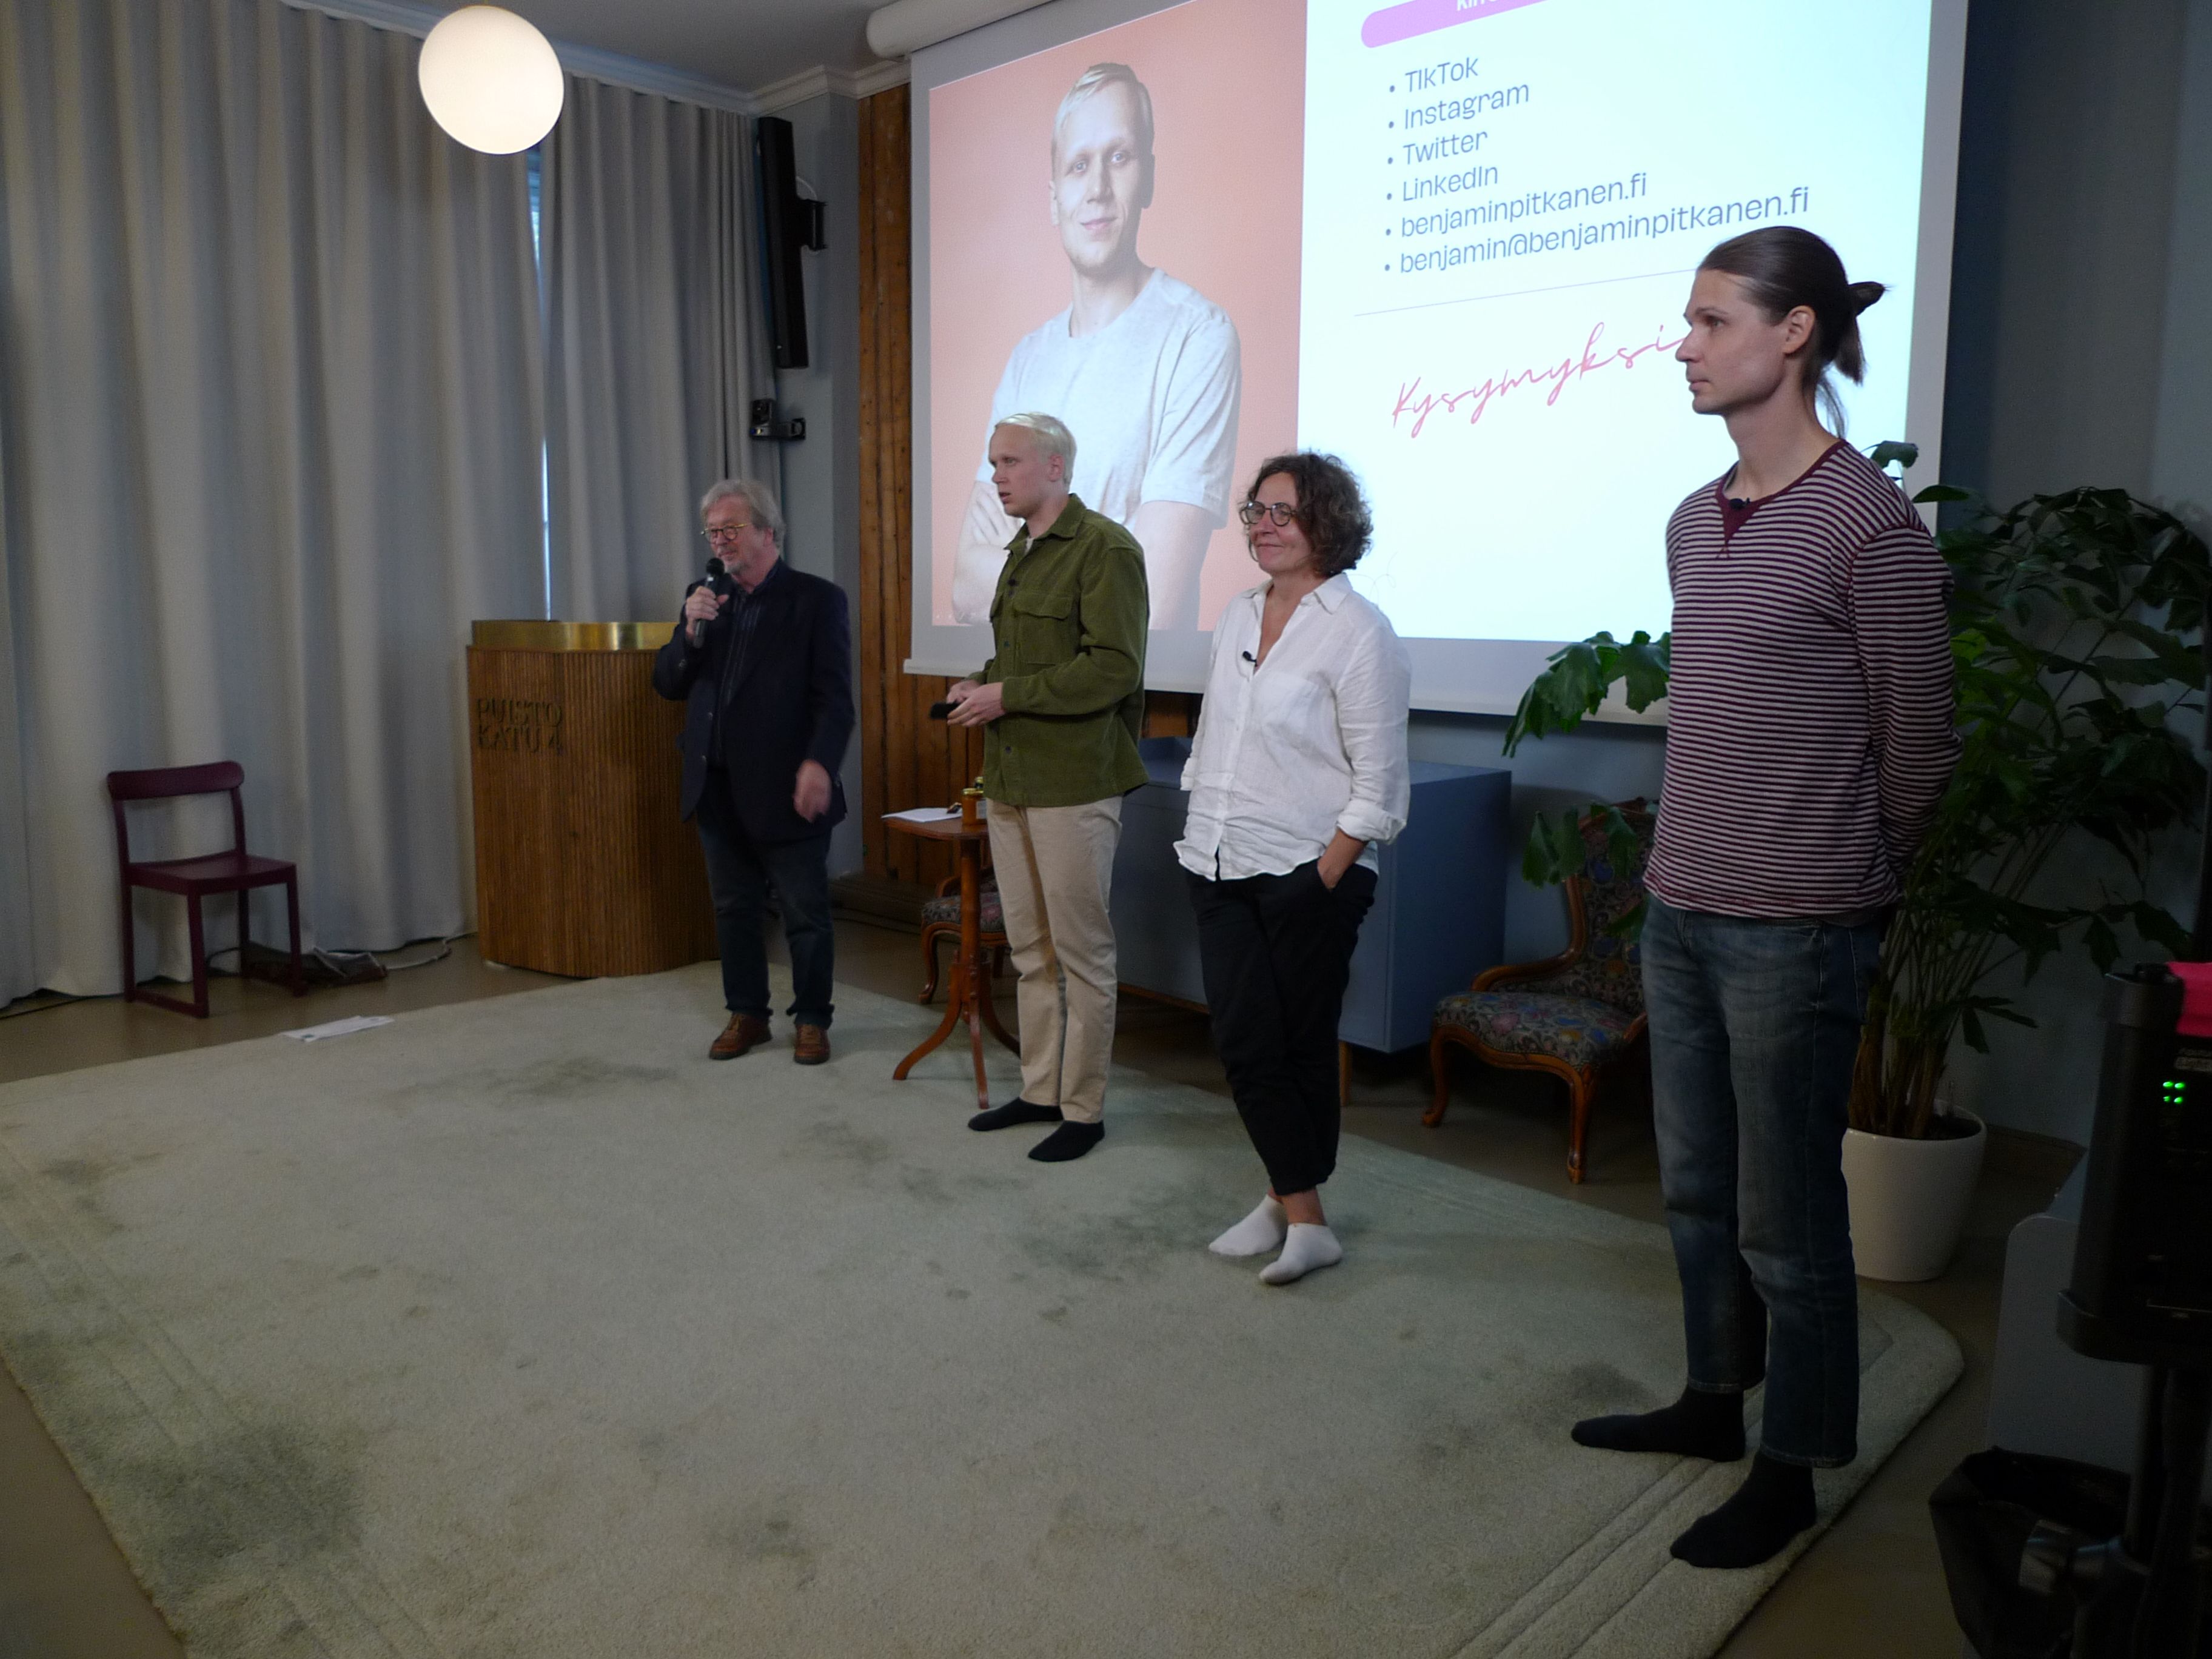 Timo Tyrväinen, Benjamin Pitkänen, Minna Kaljonen sekä Pasi Pohjolainen esittelivät ruuantuotannon tulevaisuuden haasteita